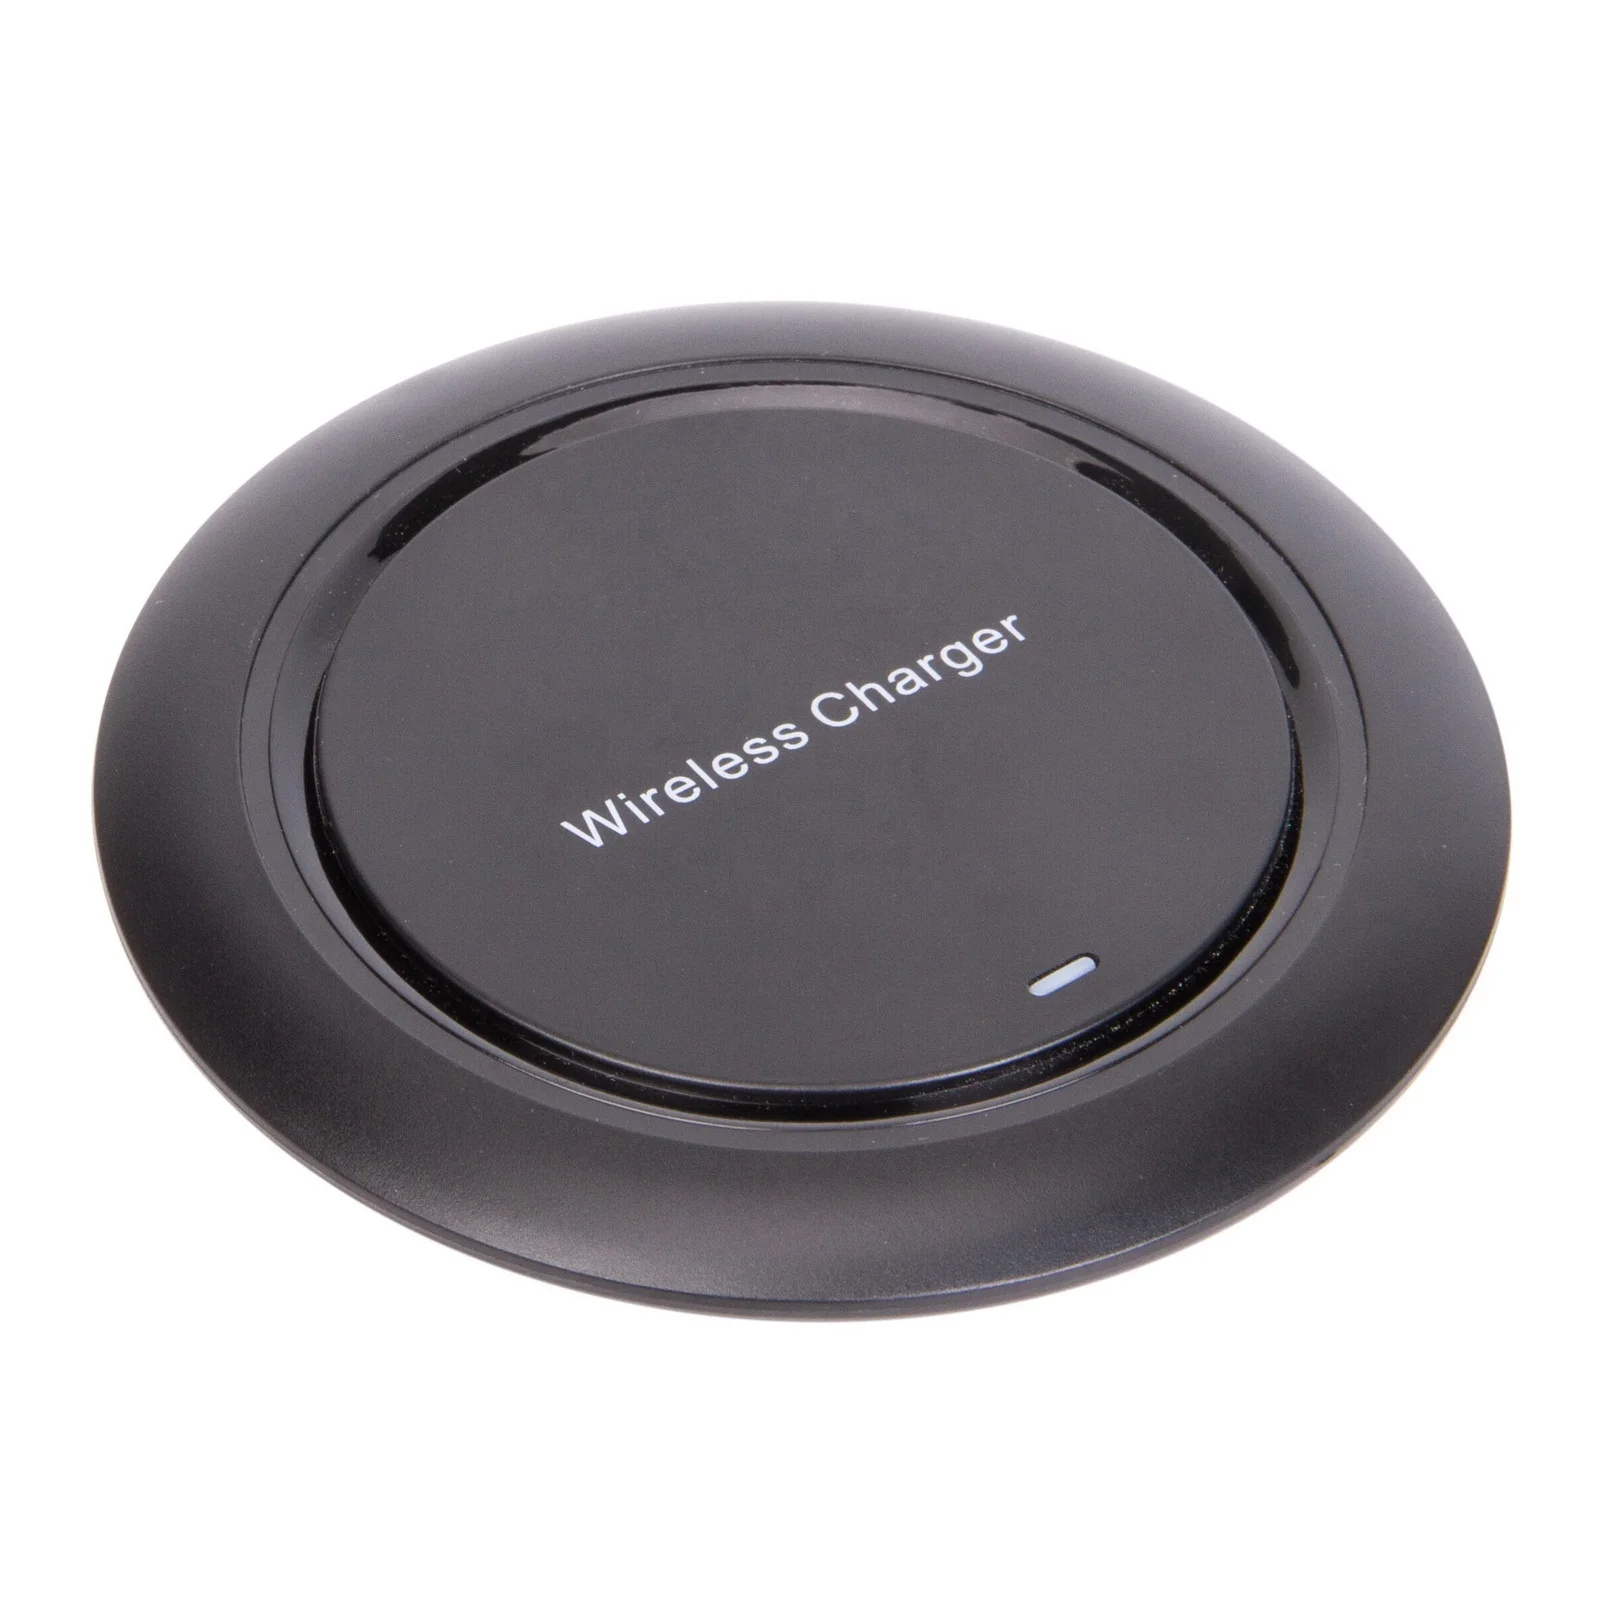 

10W Fast Wireless Charger Pad Q18 cargador inalambrico Sans fil Chargeur Carregador sem fio Kablosuz sarj For Smart Phone, Black/white